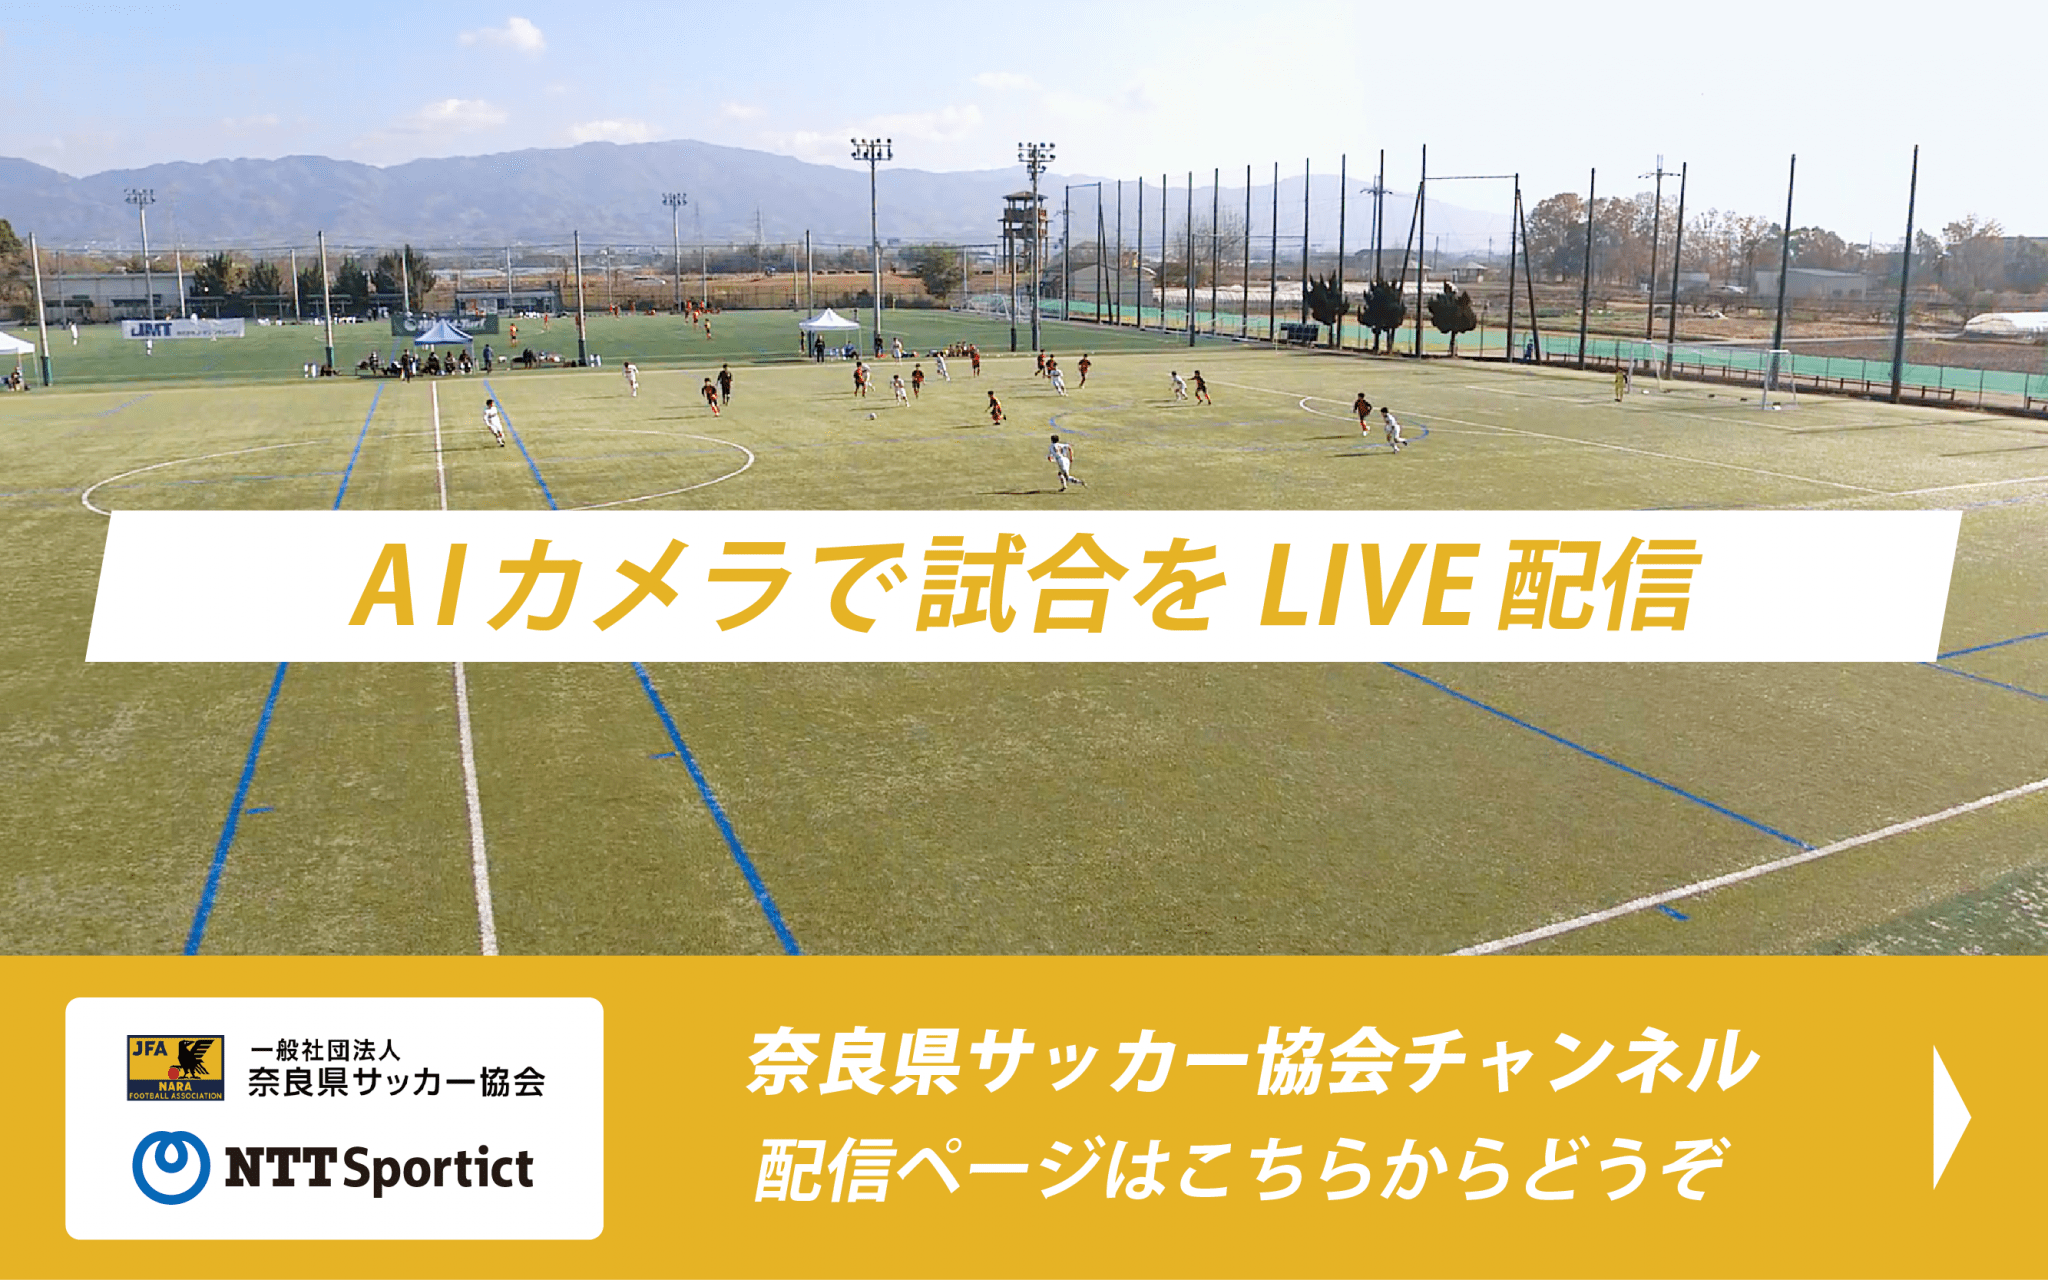 奈良県サッカー協会 チャンネル配信